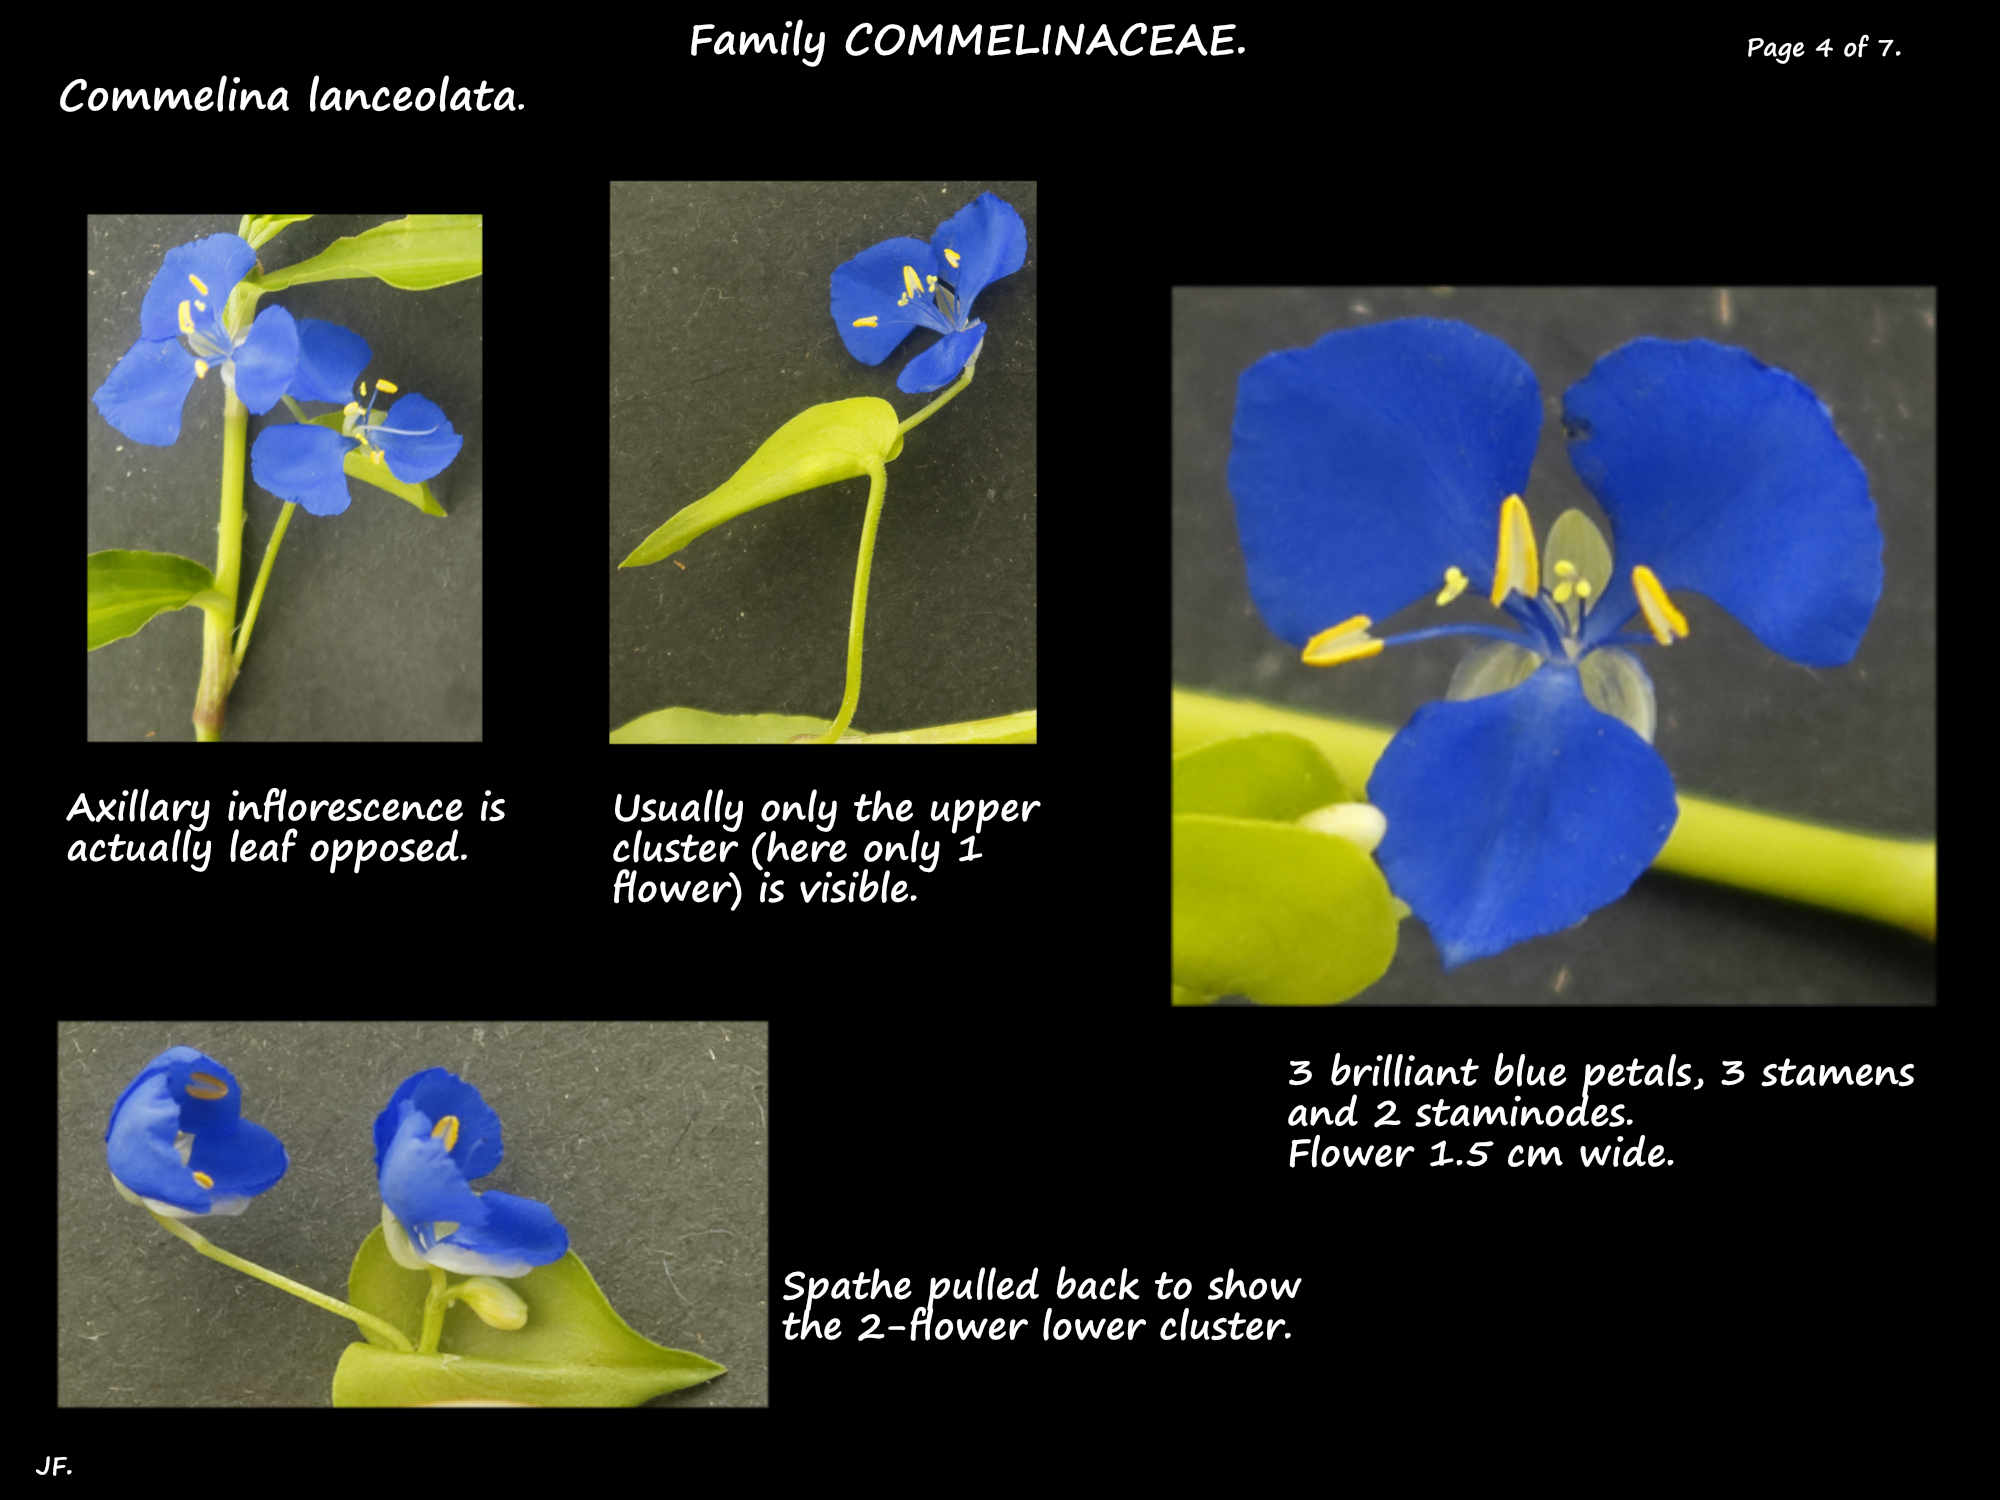 4 Commelina lanceolata inflorescence & flower